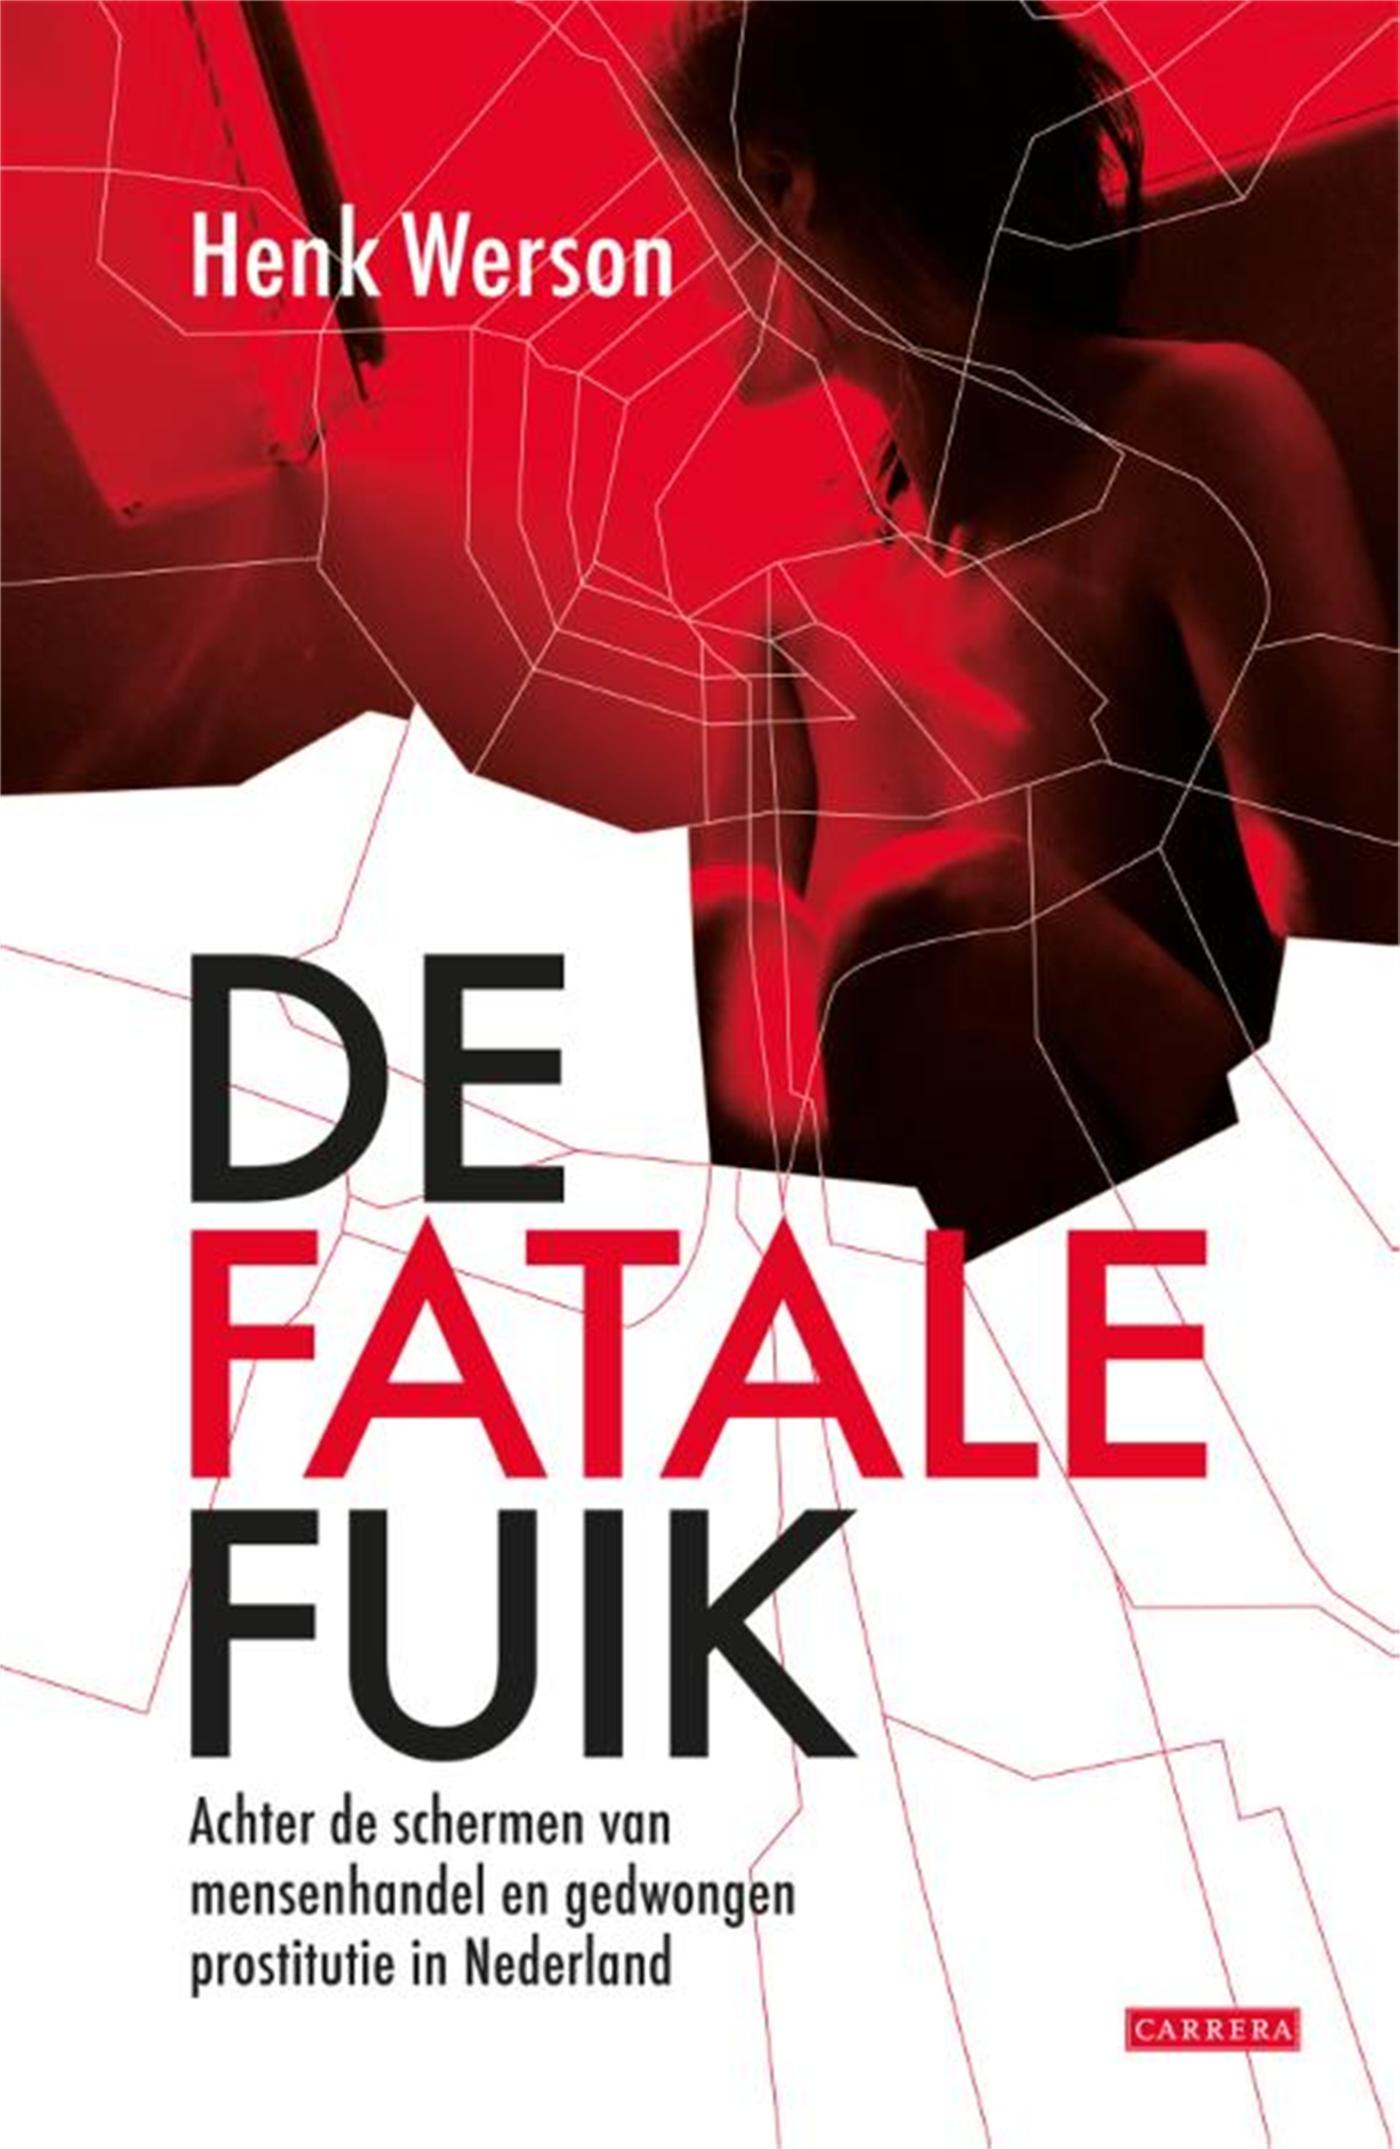 De fatale fuik (Ebook)